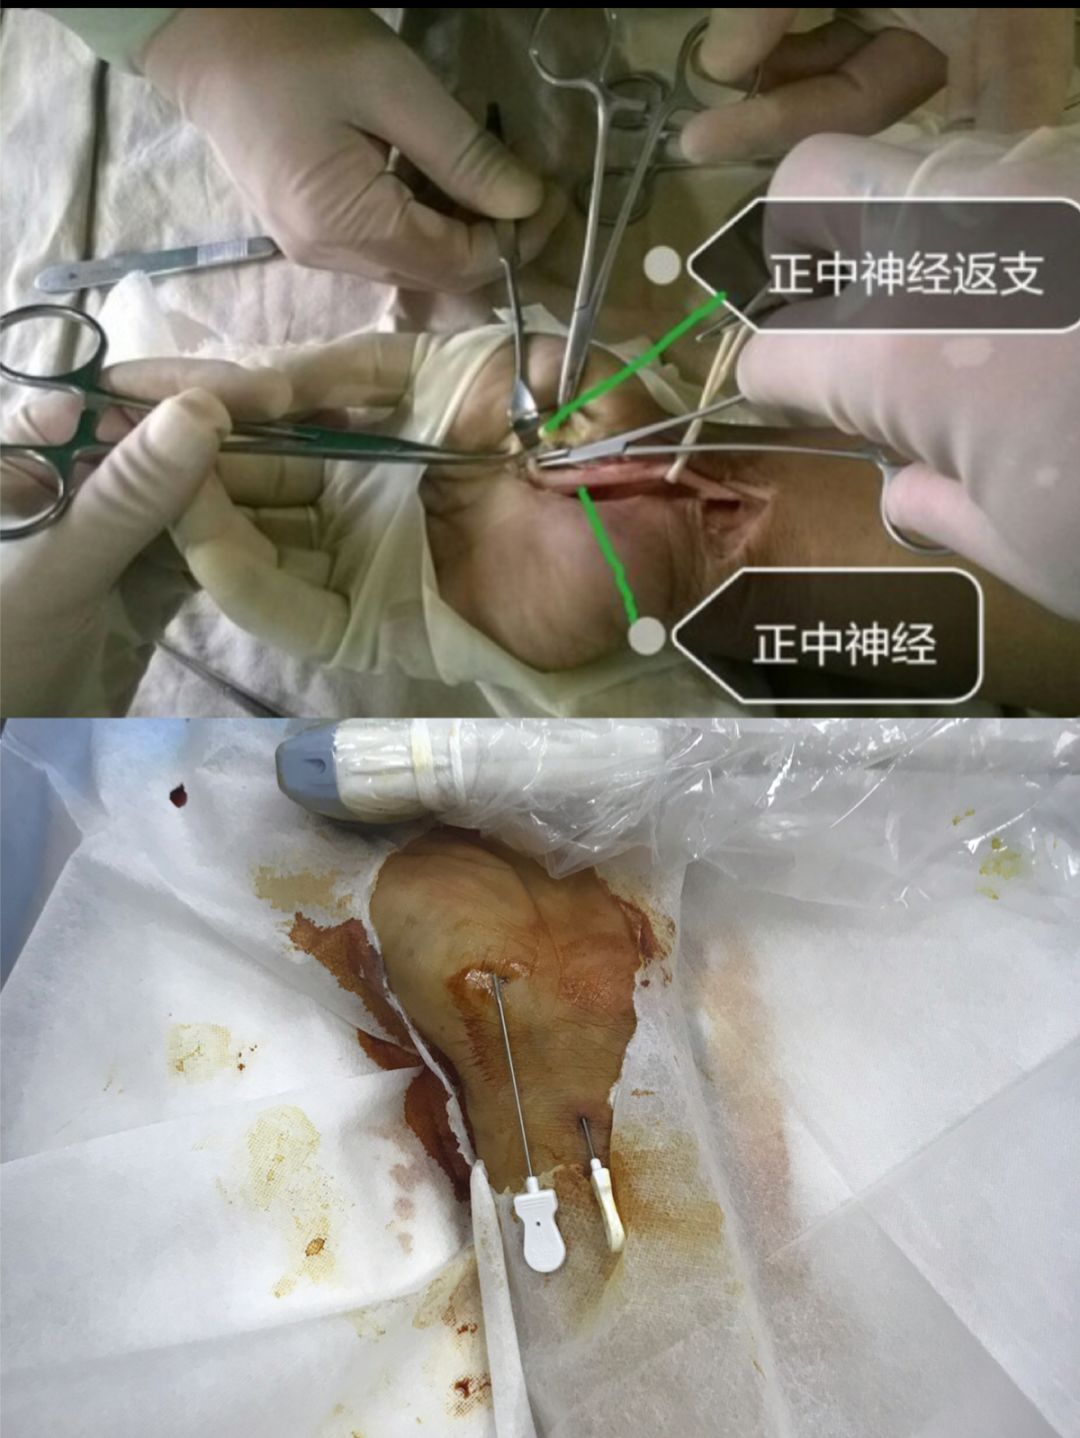 腕管综合征常规外科切口与针刀创口比较